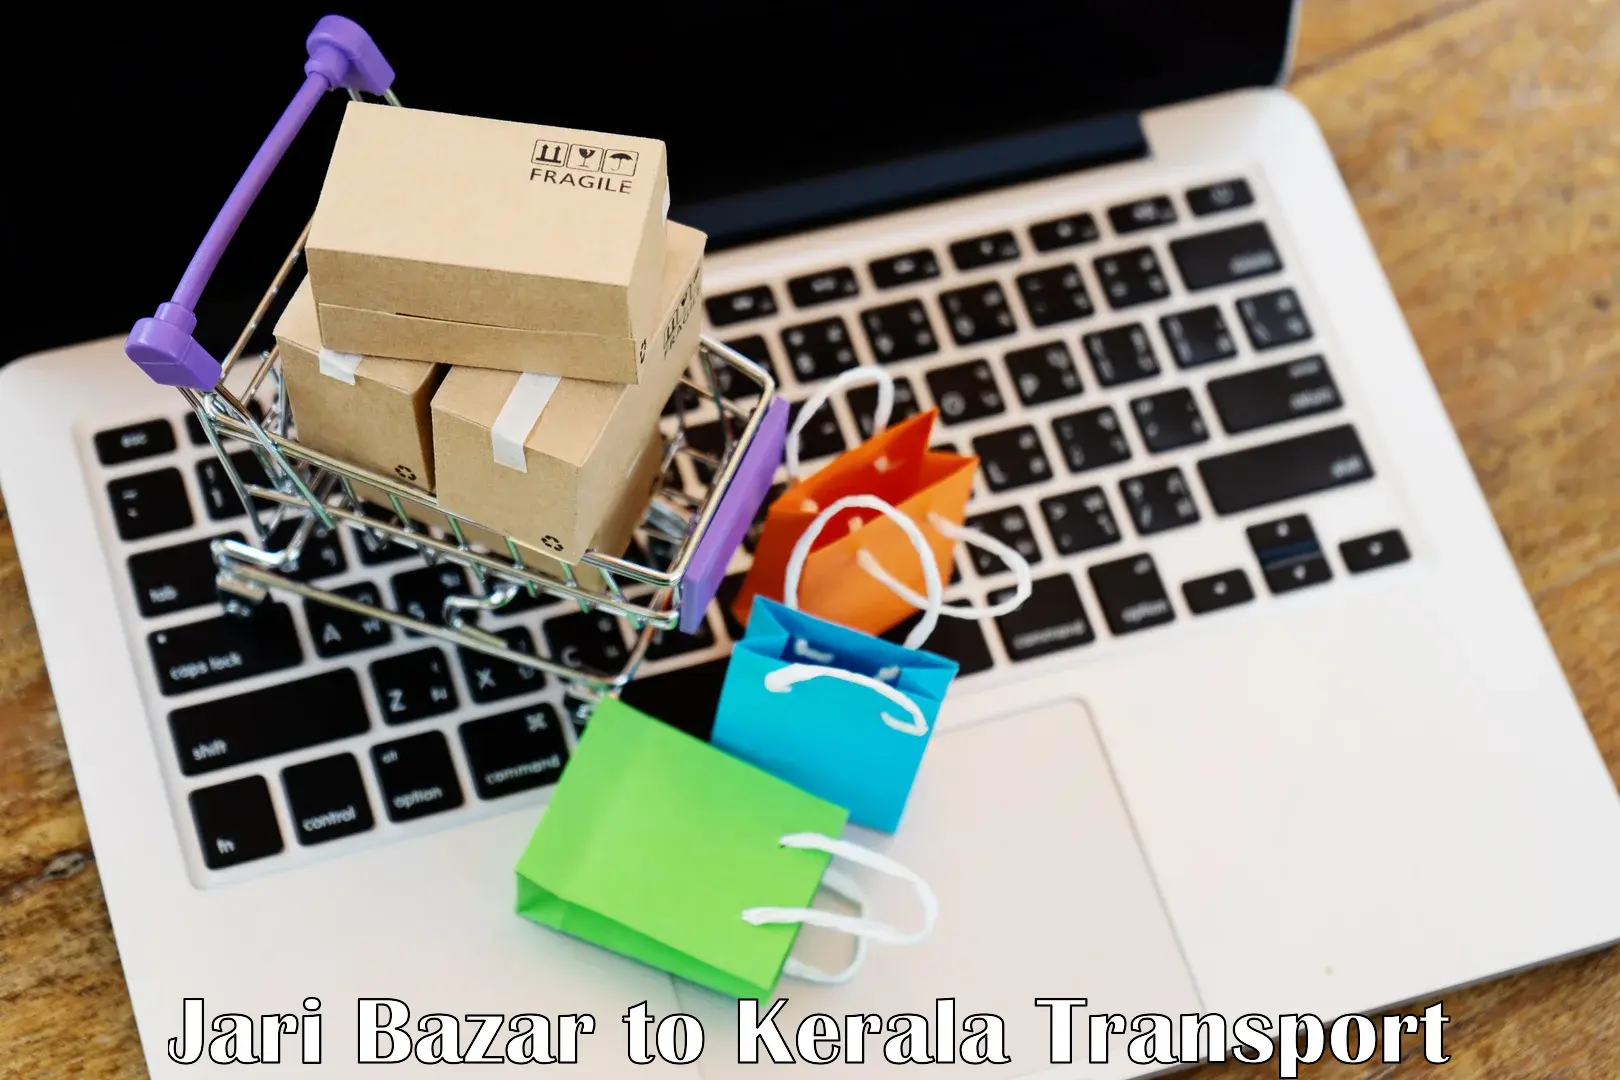 Cargo transport services Jari Bazar to Kazhakkoottam